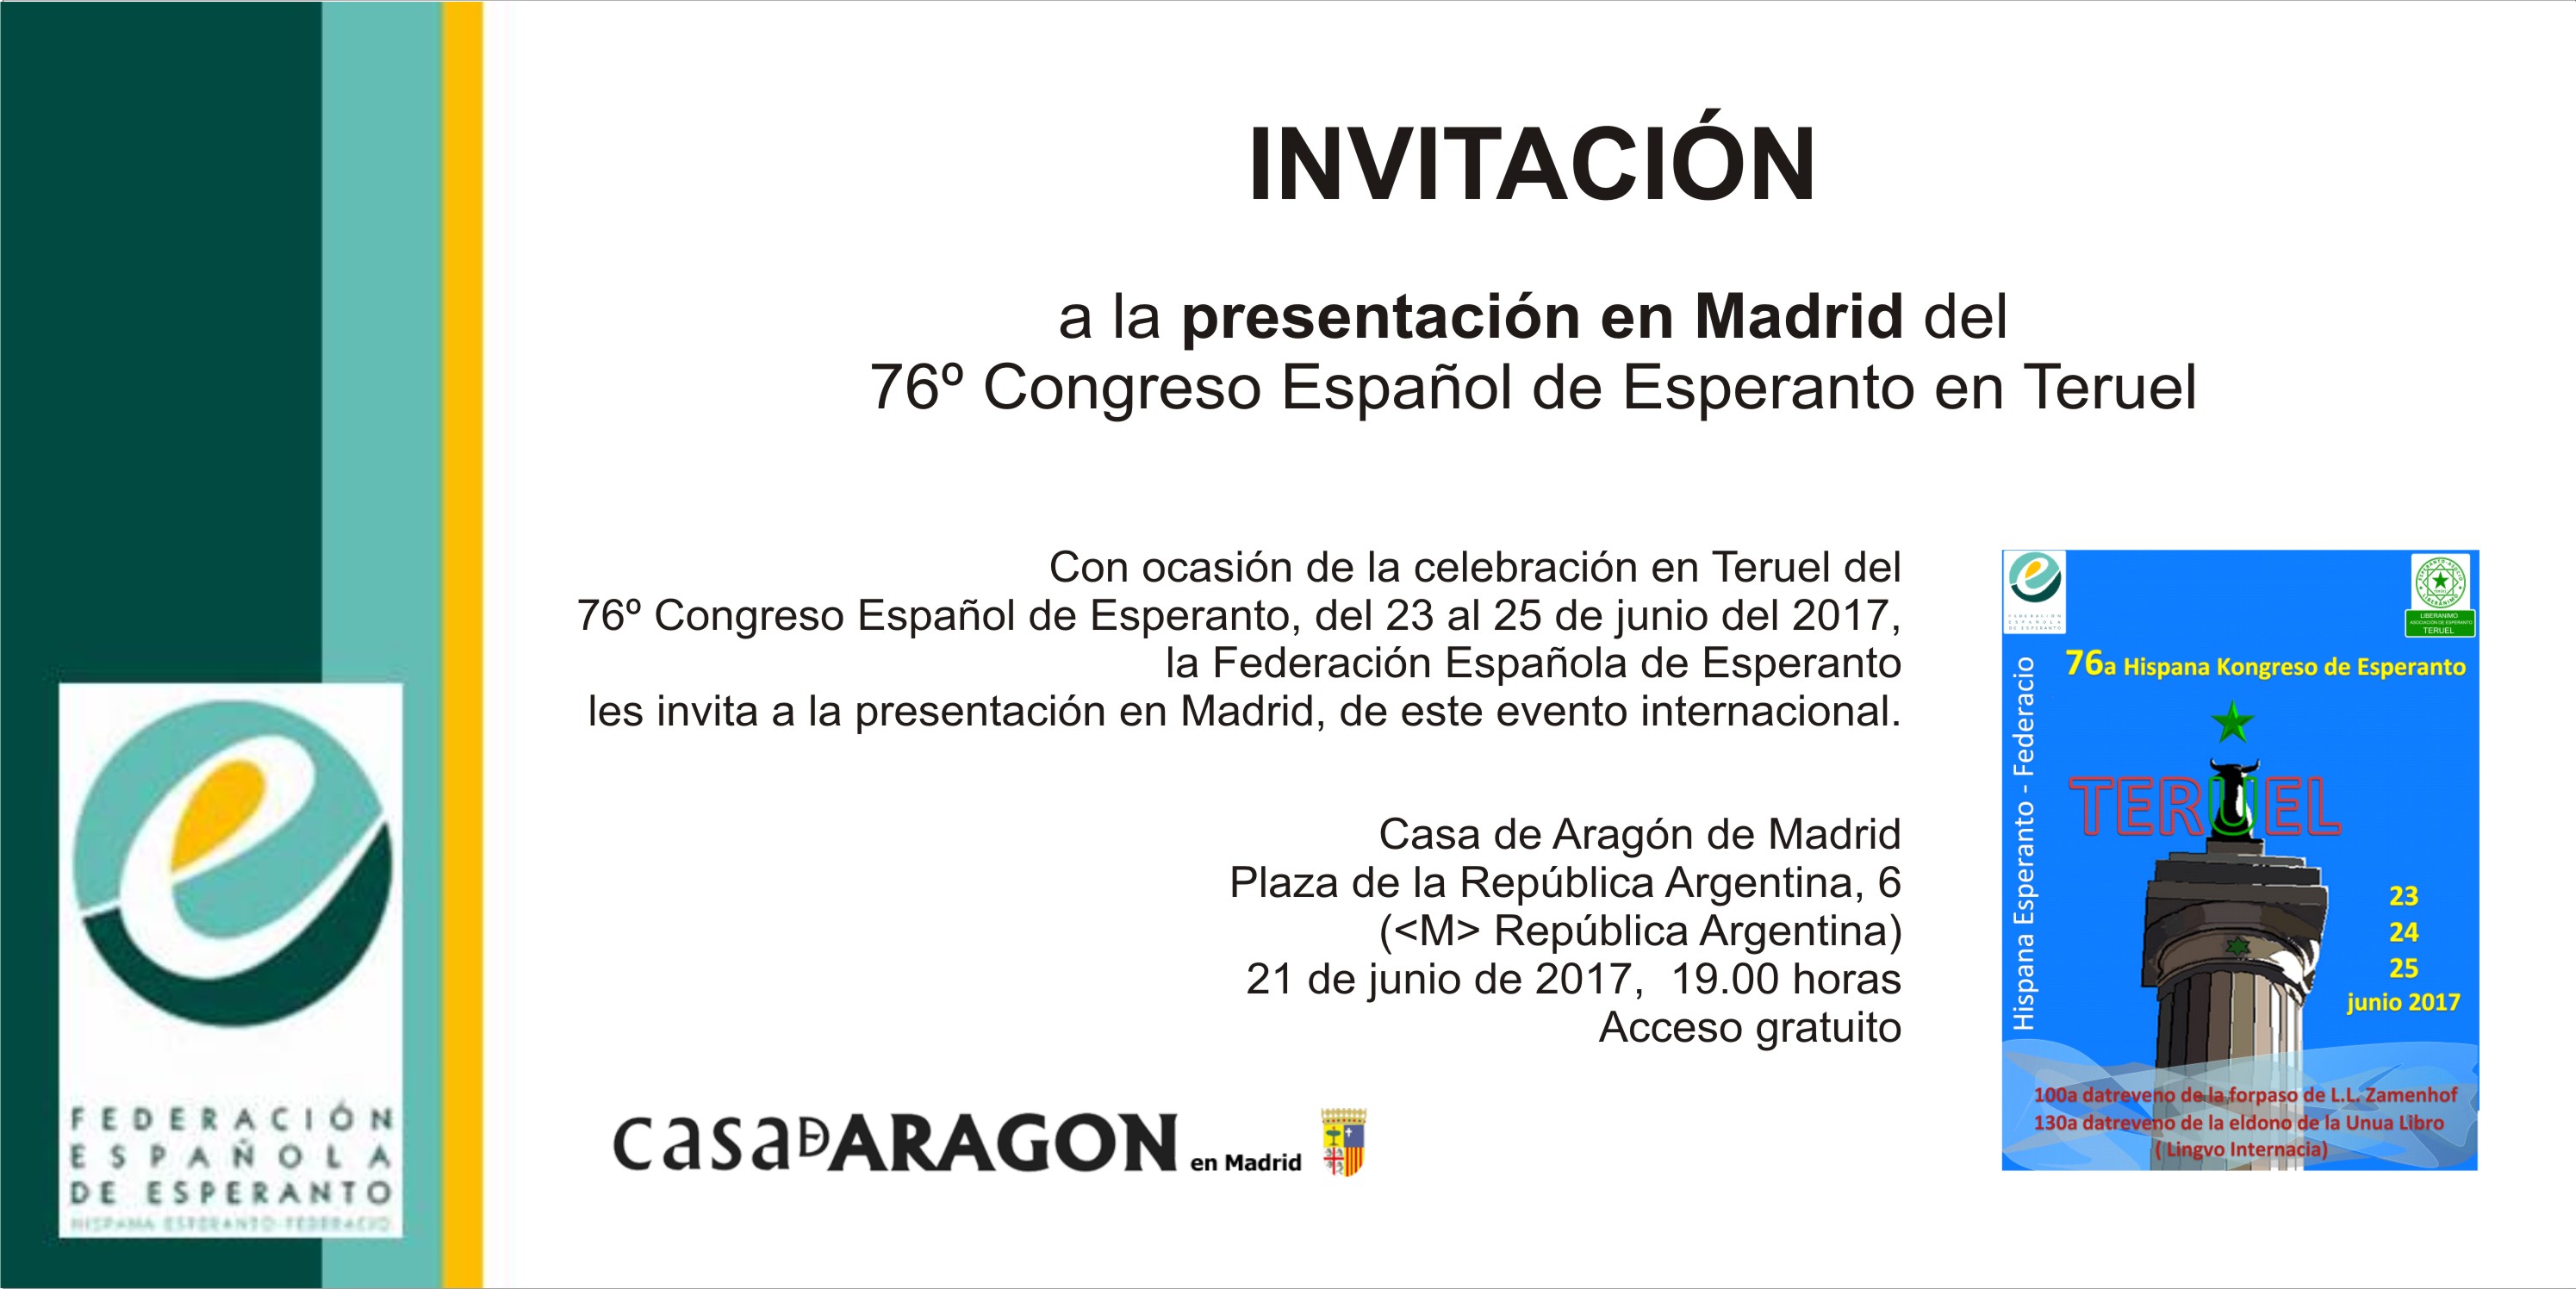 Invitación al acto en la Casa de Aragón